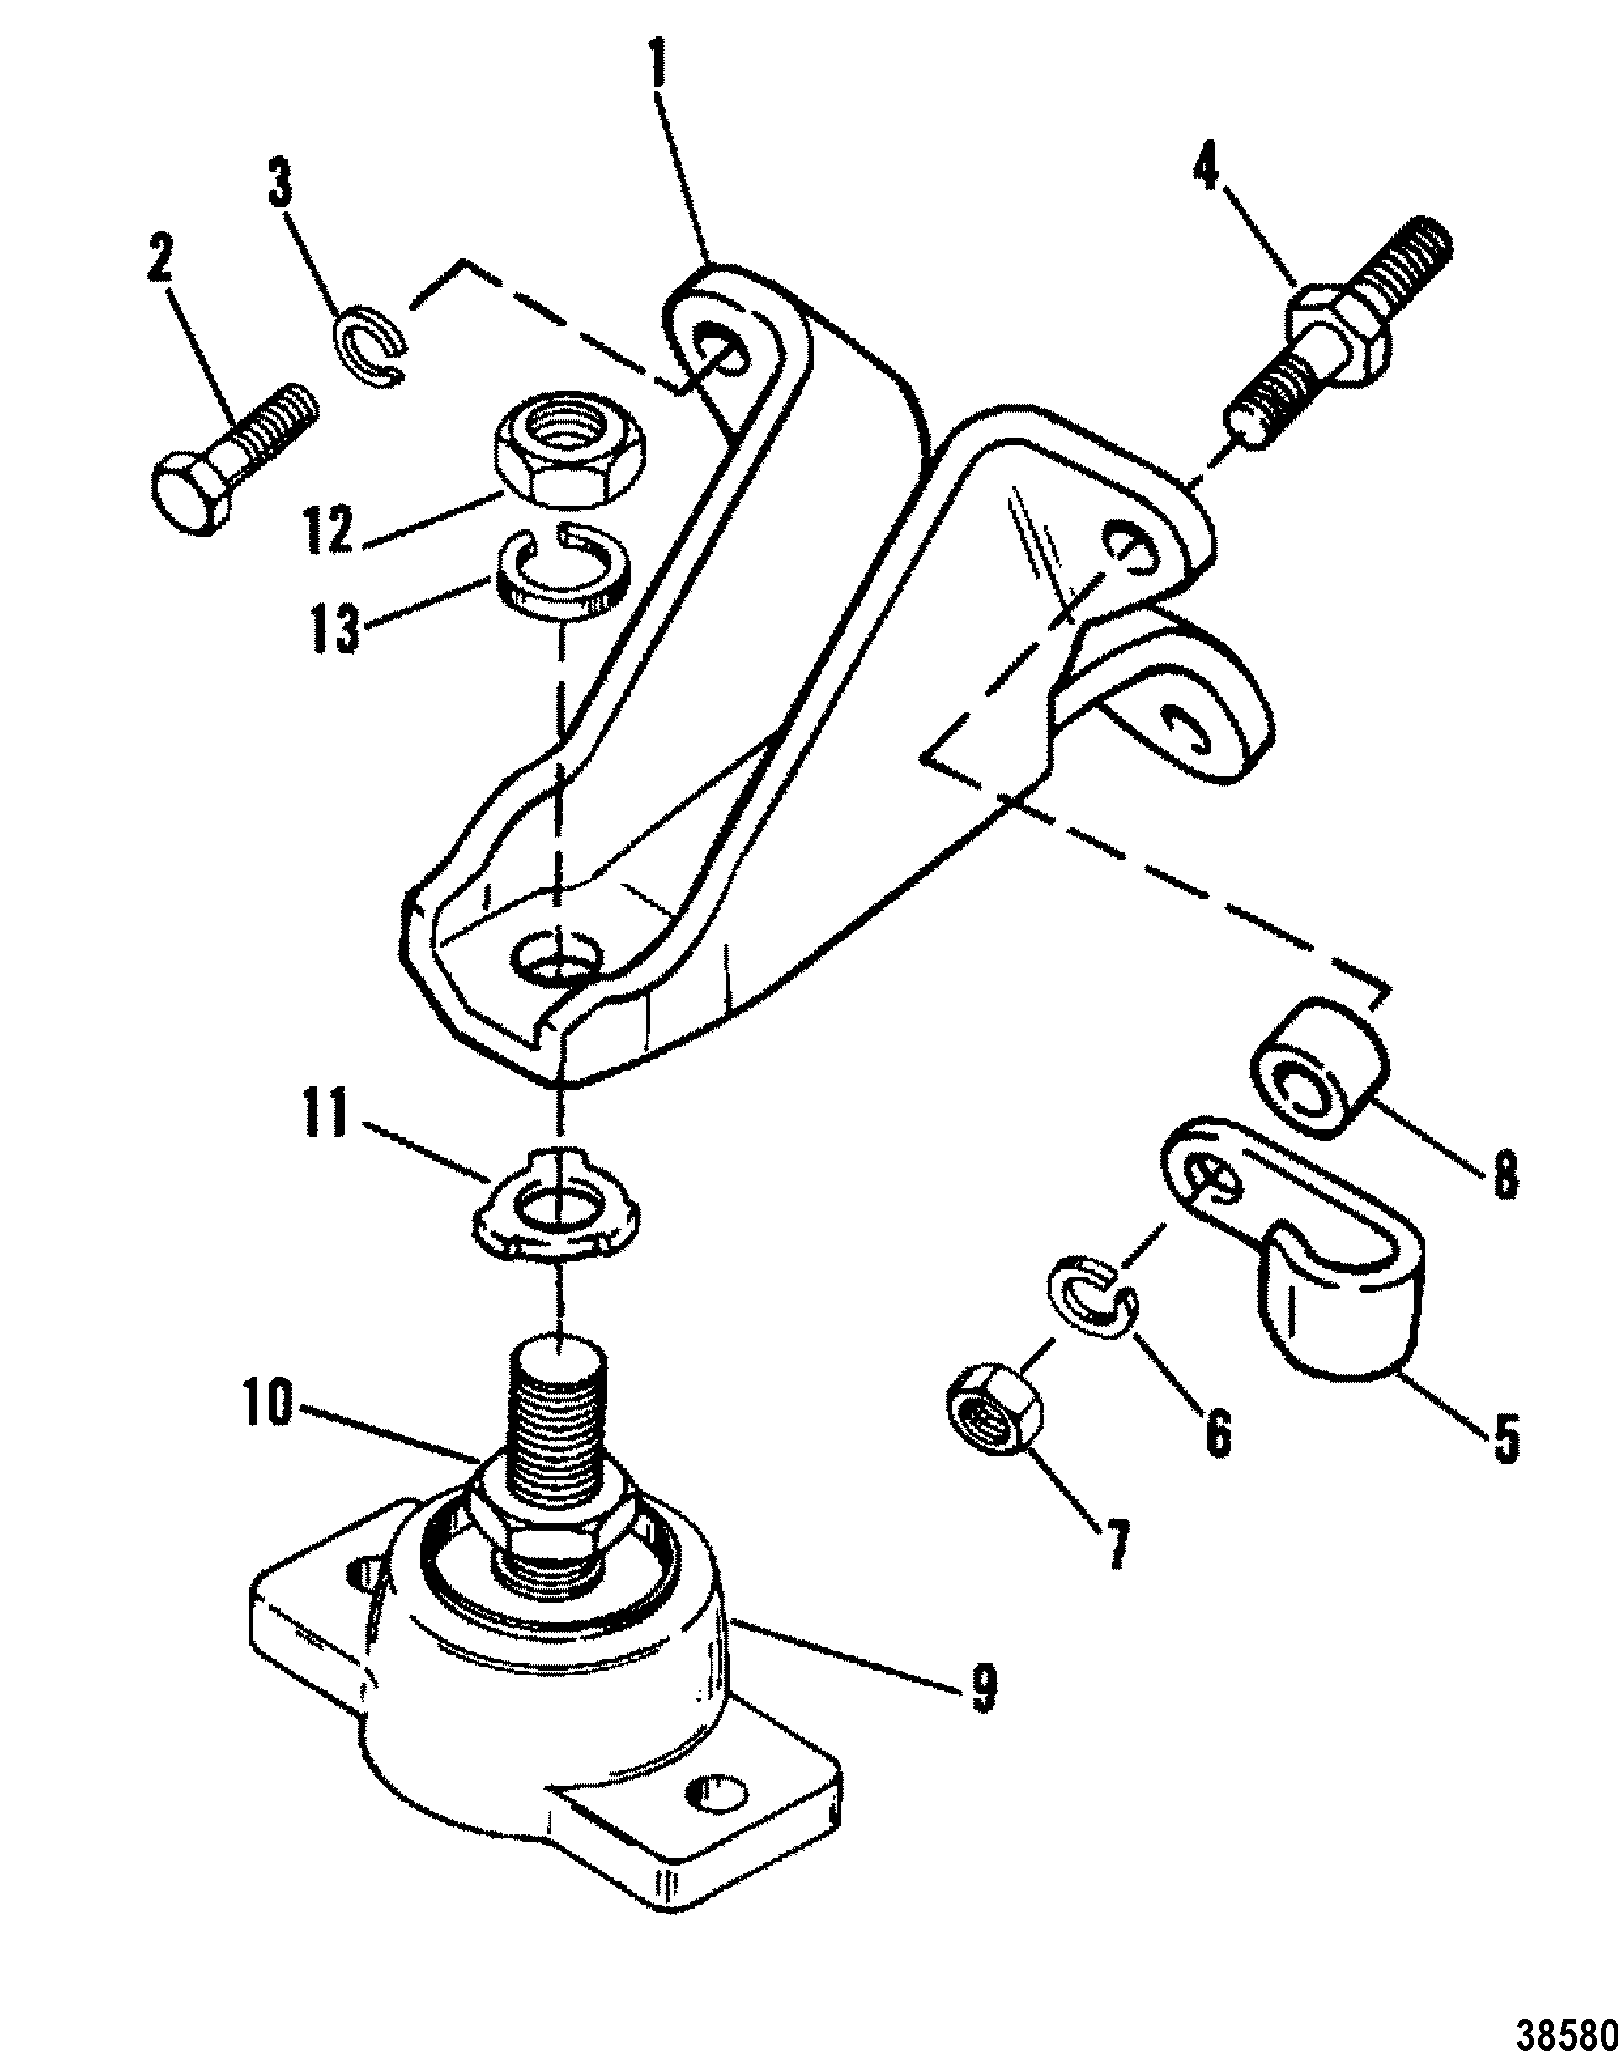 ENGINE MOUNTING(STAMPED BRACKET)